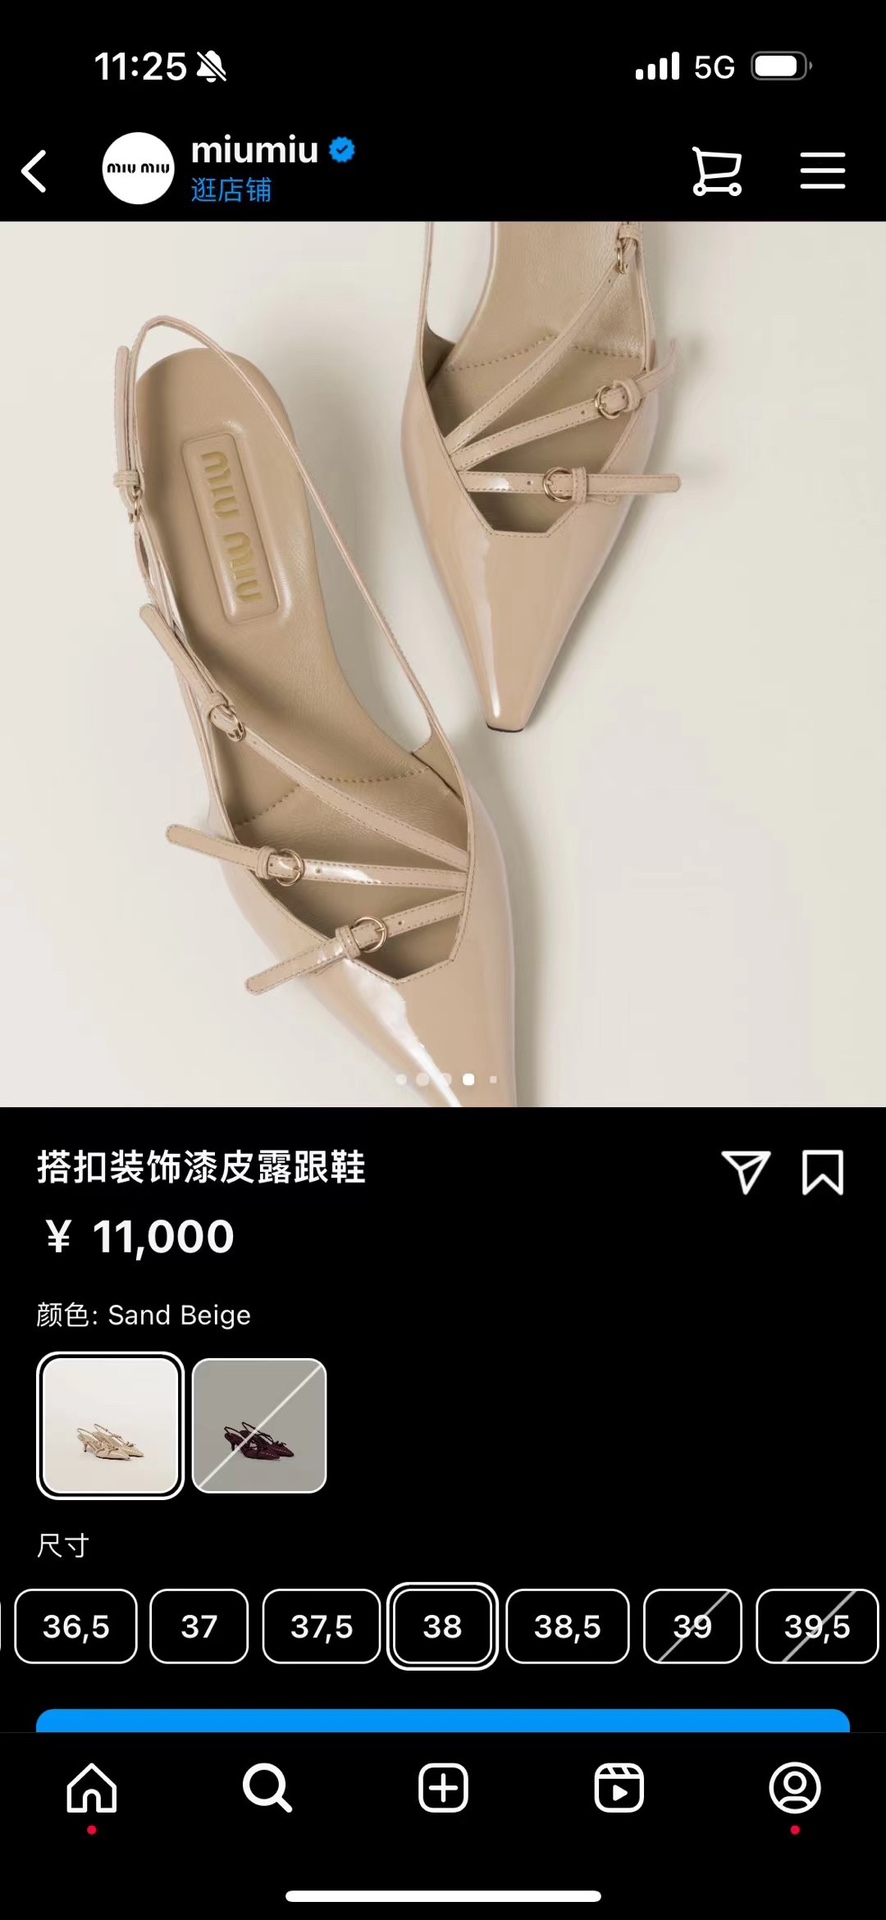 拿回去不要卖便宜了，在中国独一份，说良心话这款鞋我出ydddzwe➕你们都是赚到，代购拿回去4-5千在卖的东西[捂脸]